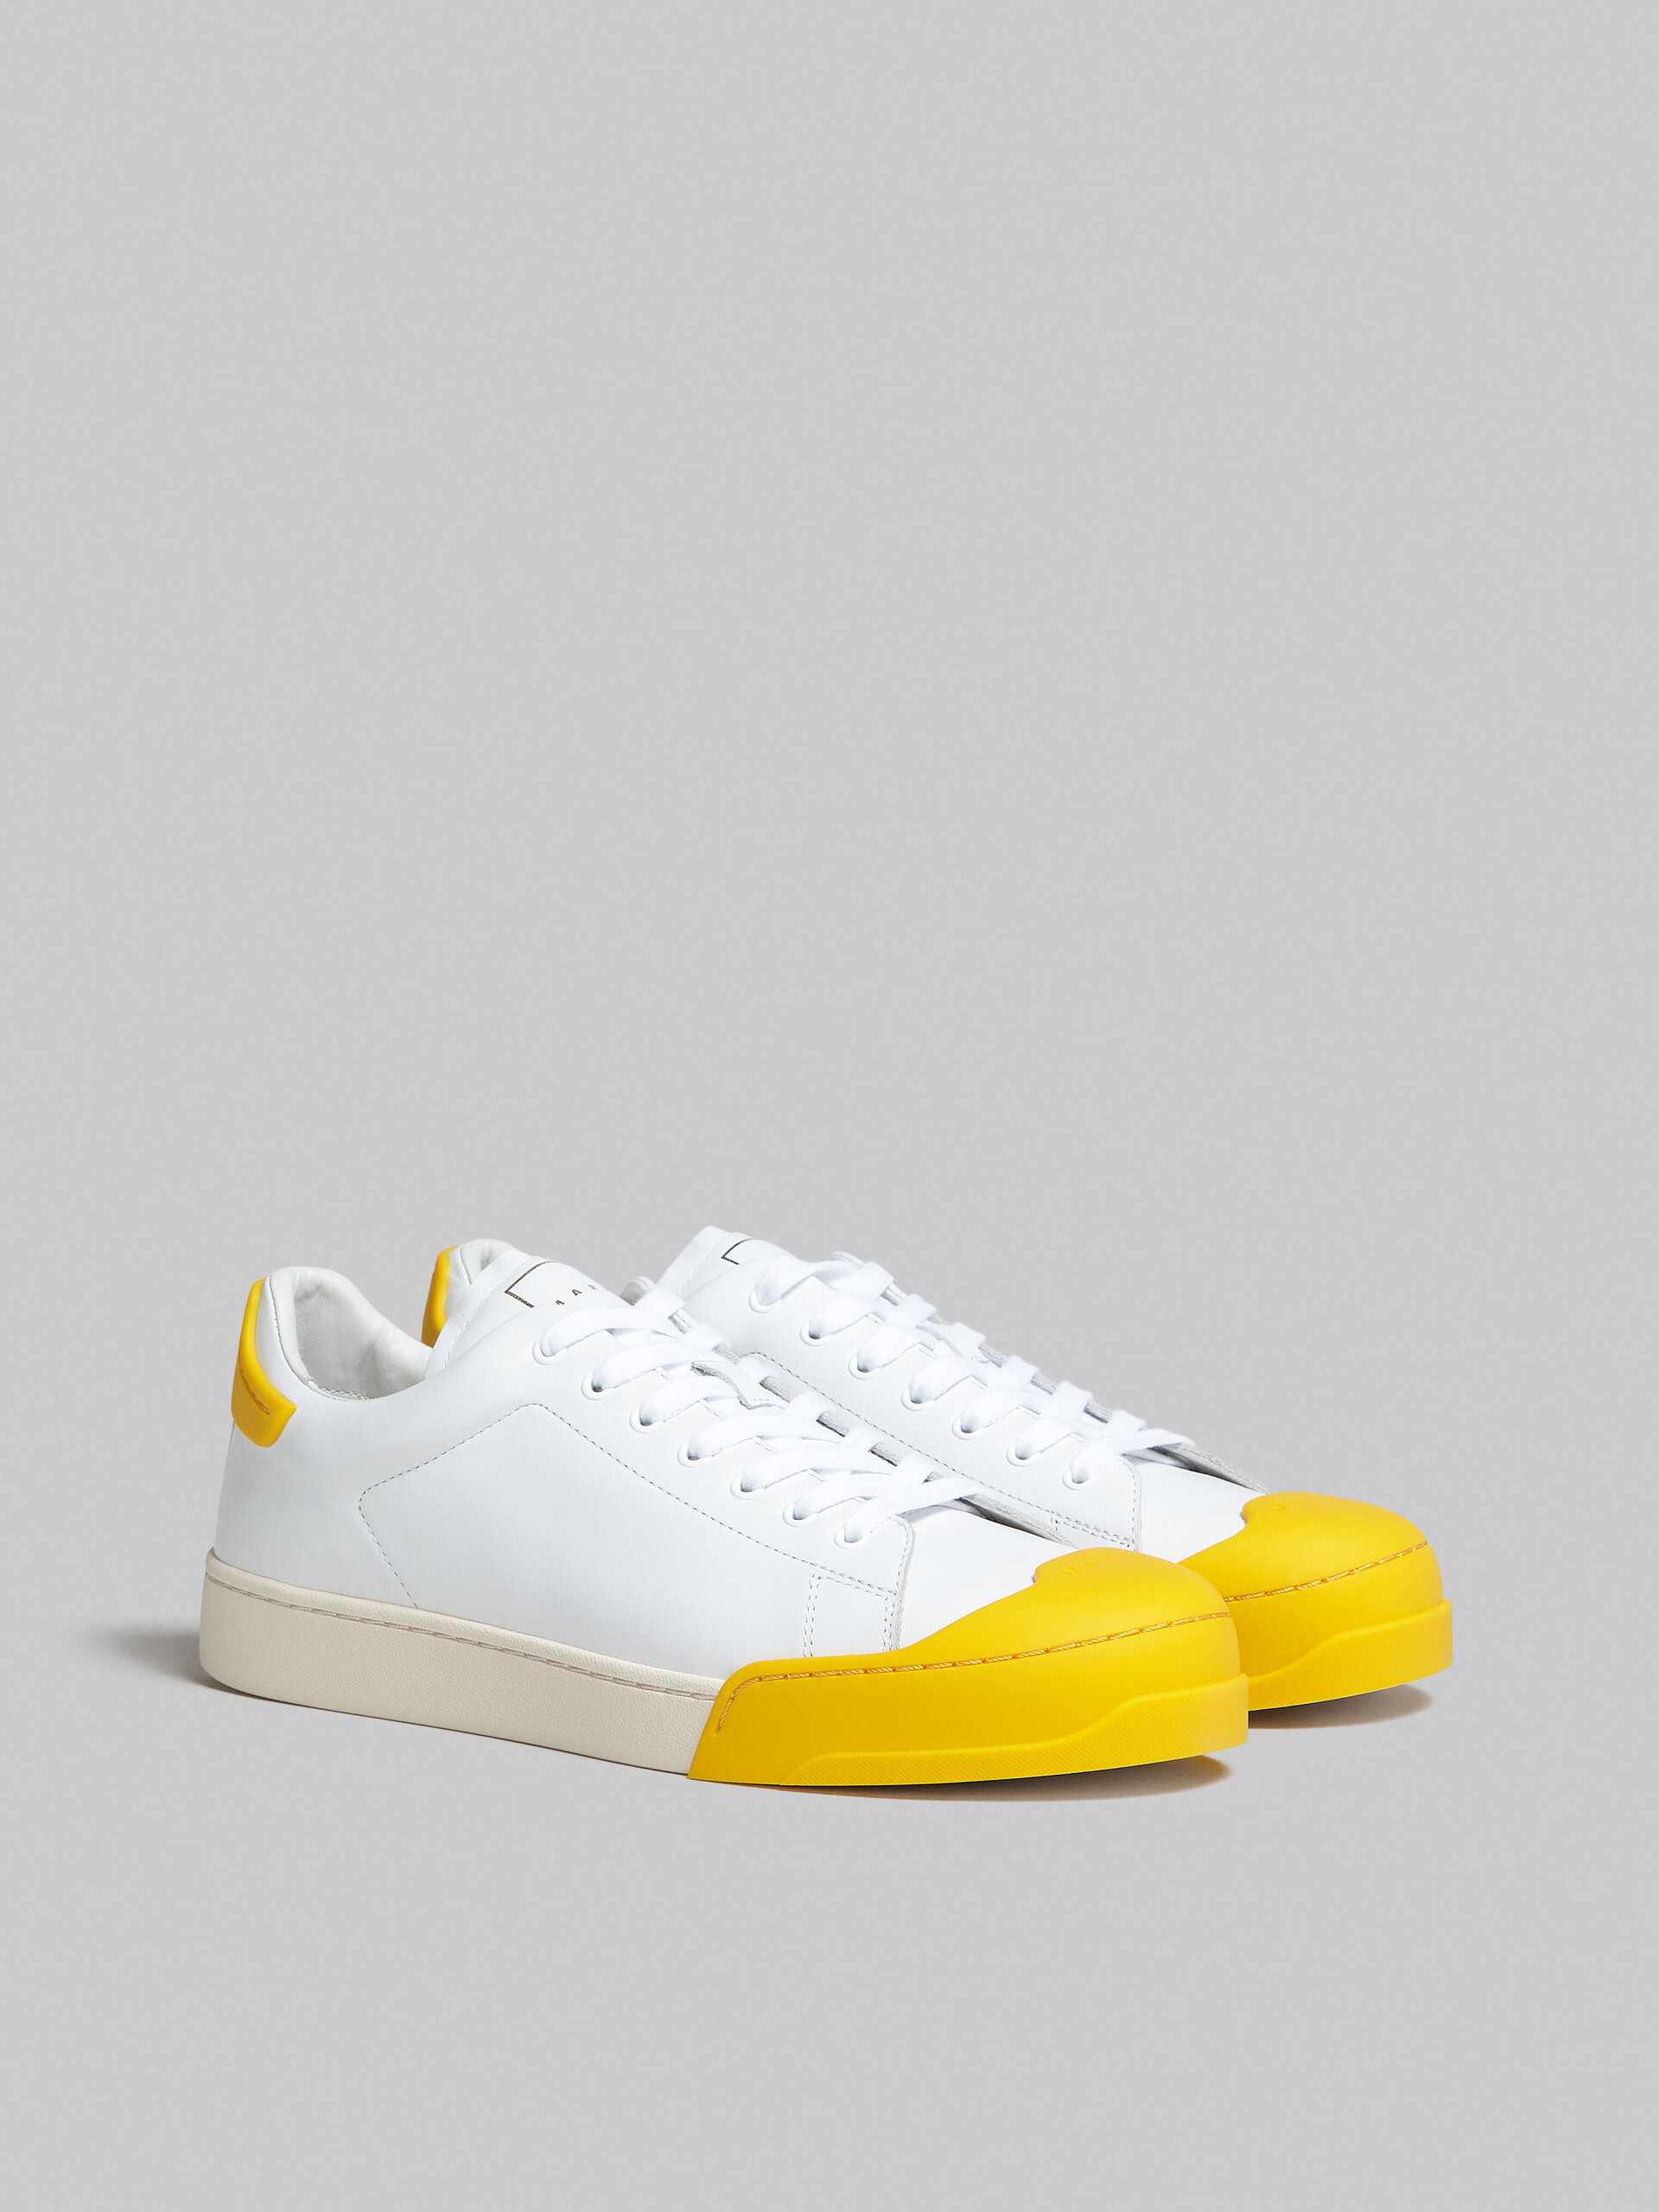 Sneaker Dada Bumper in pelle bianca e gialla - Sneakers - Image 2